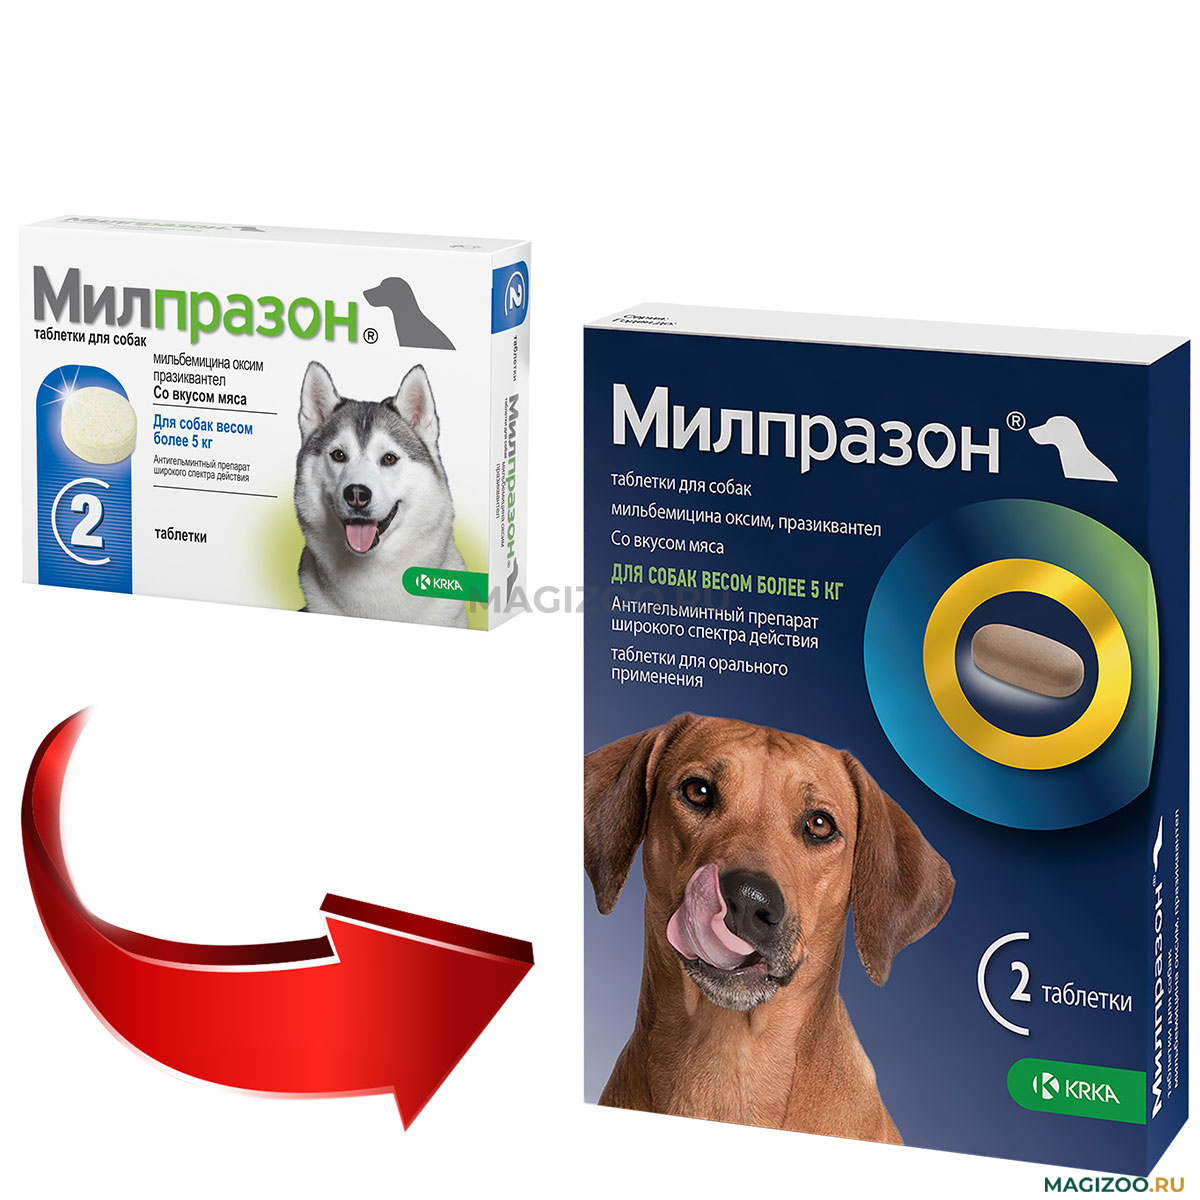 МИЛПРАЗОН антигельминтик для взрослых собак весом более 5 кг уп. 2 таблетки  (1 шт) купить в интернет-магазине по цене от 482 ₽, доставка по Москве